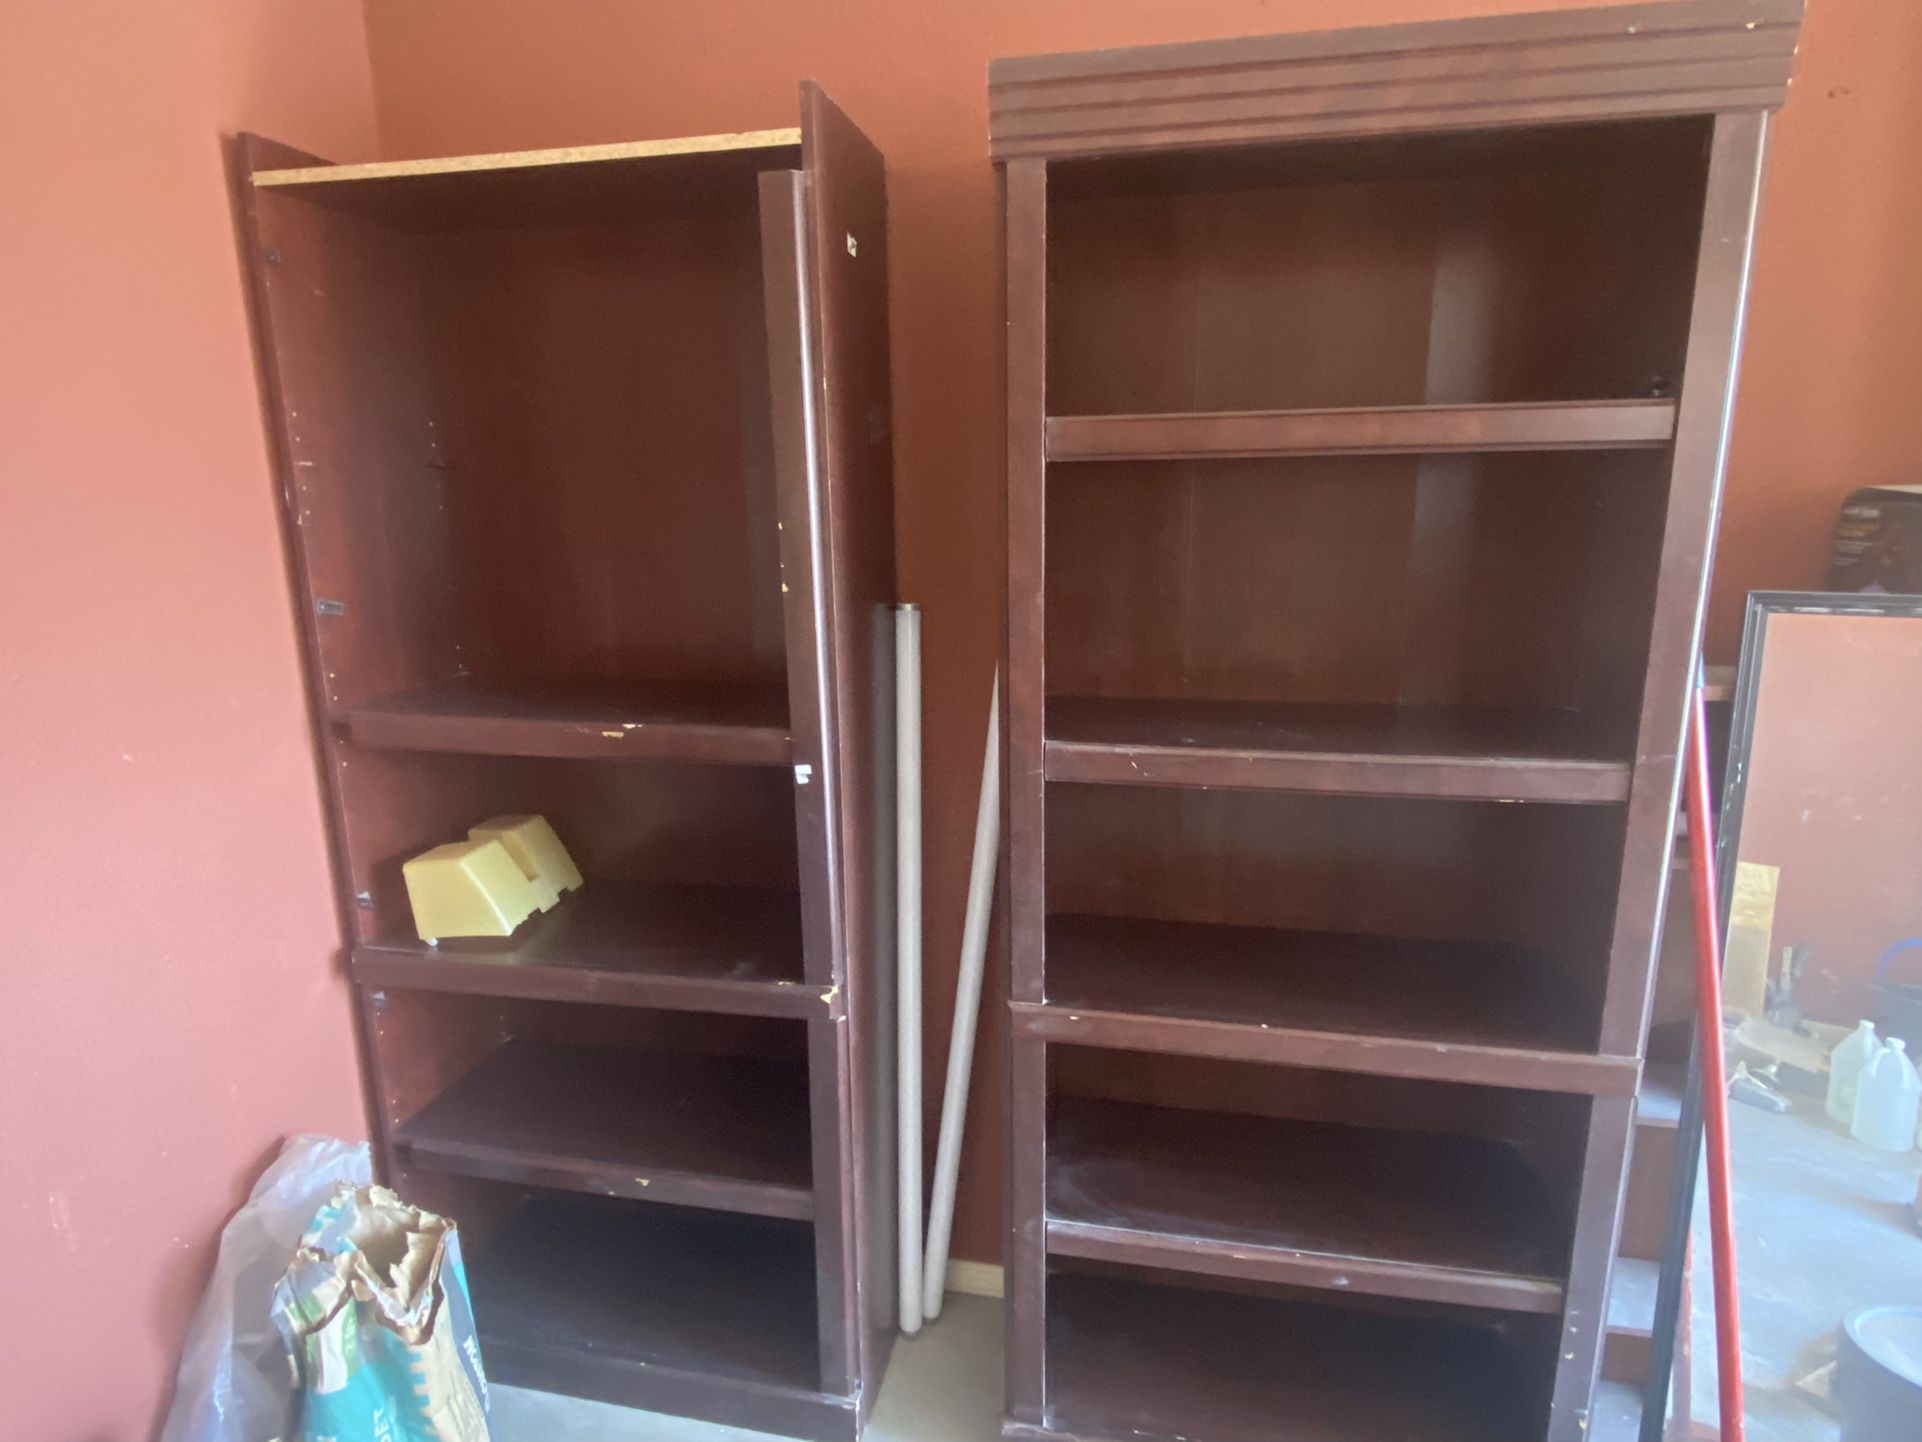 2 Bookshelves